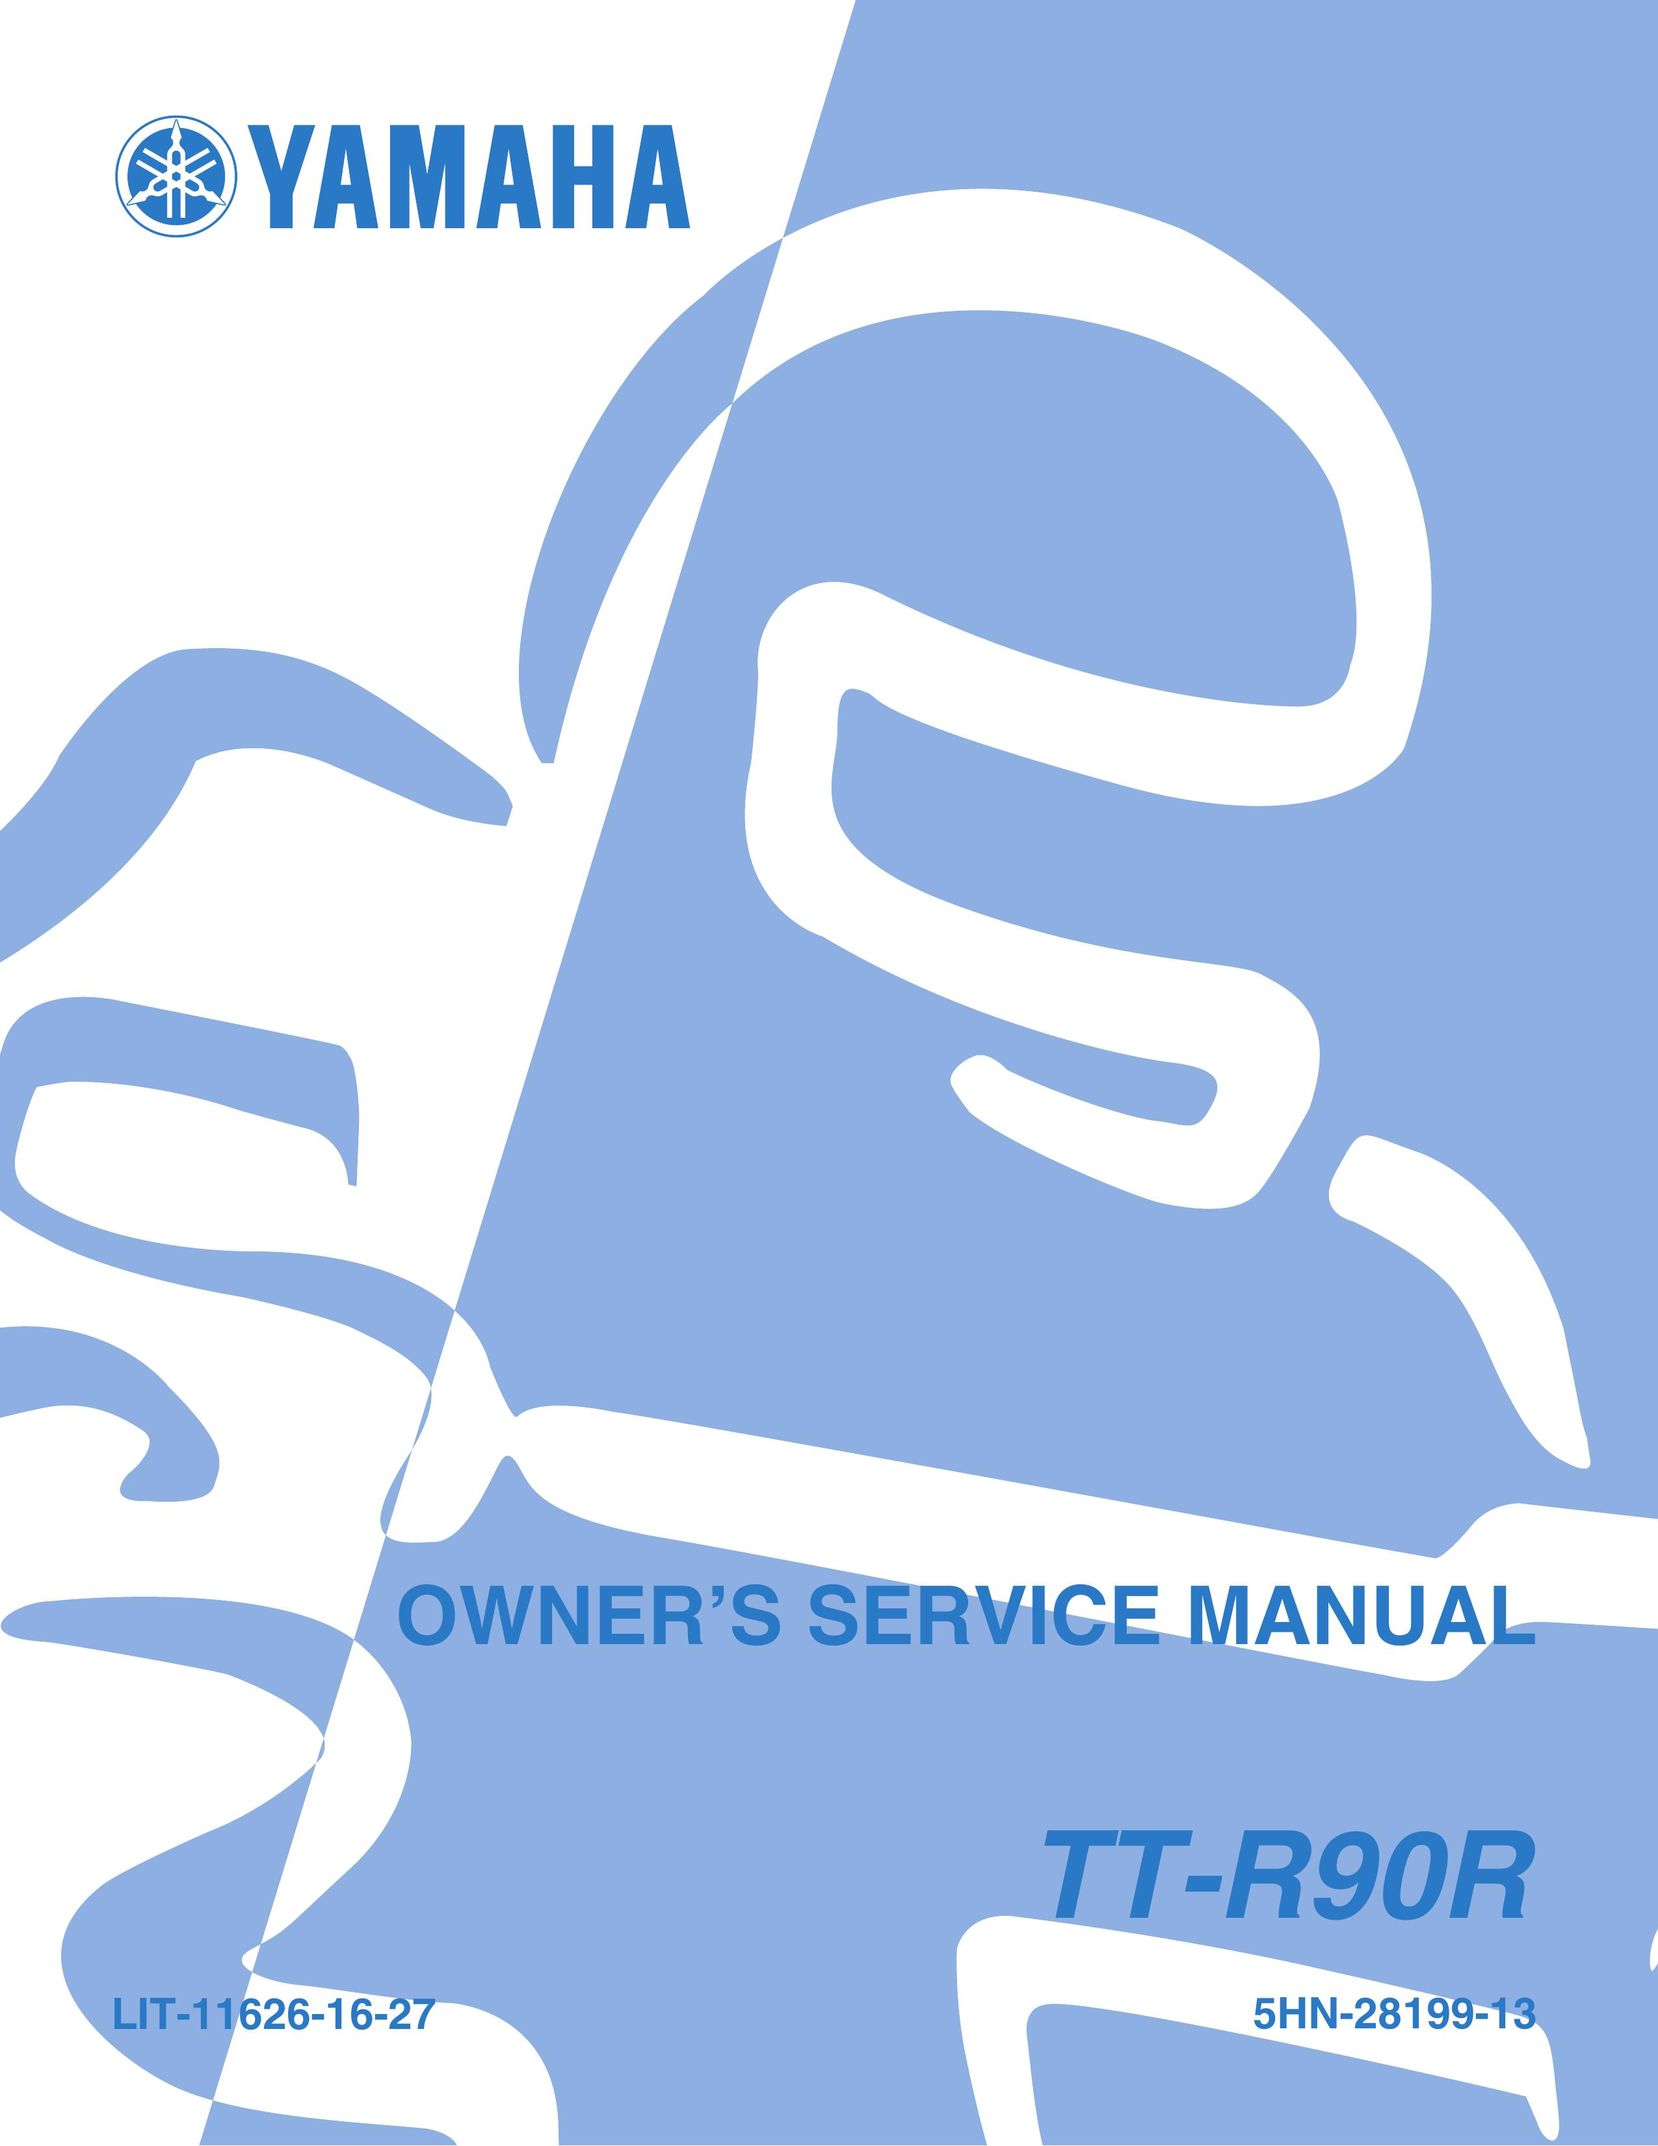 Yamaha LIT-11626-16-27 Video Game Controller User Manual